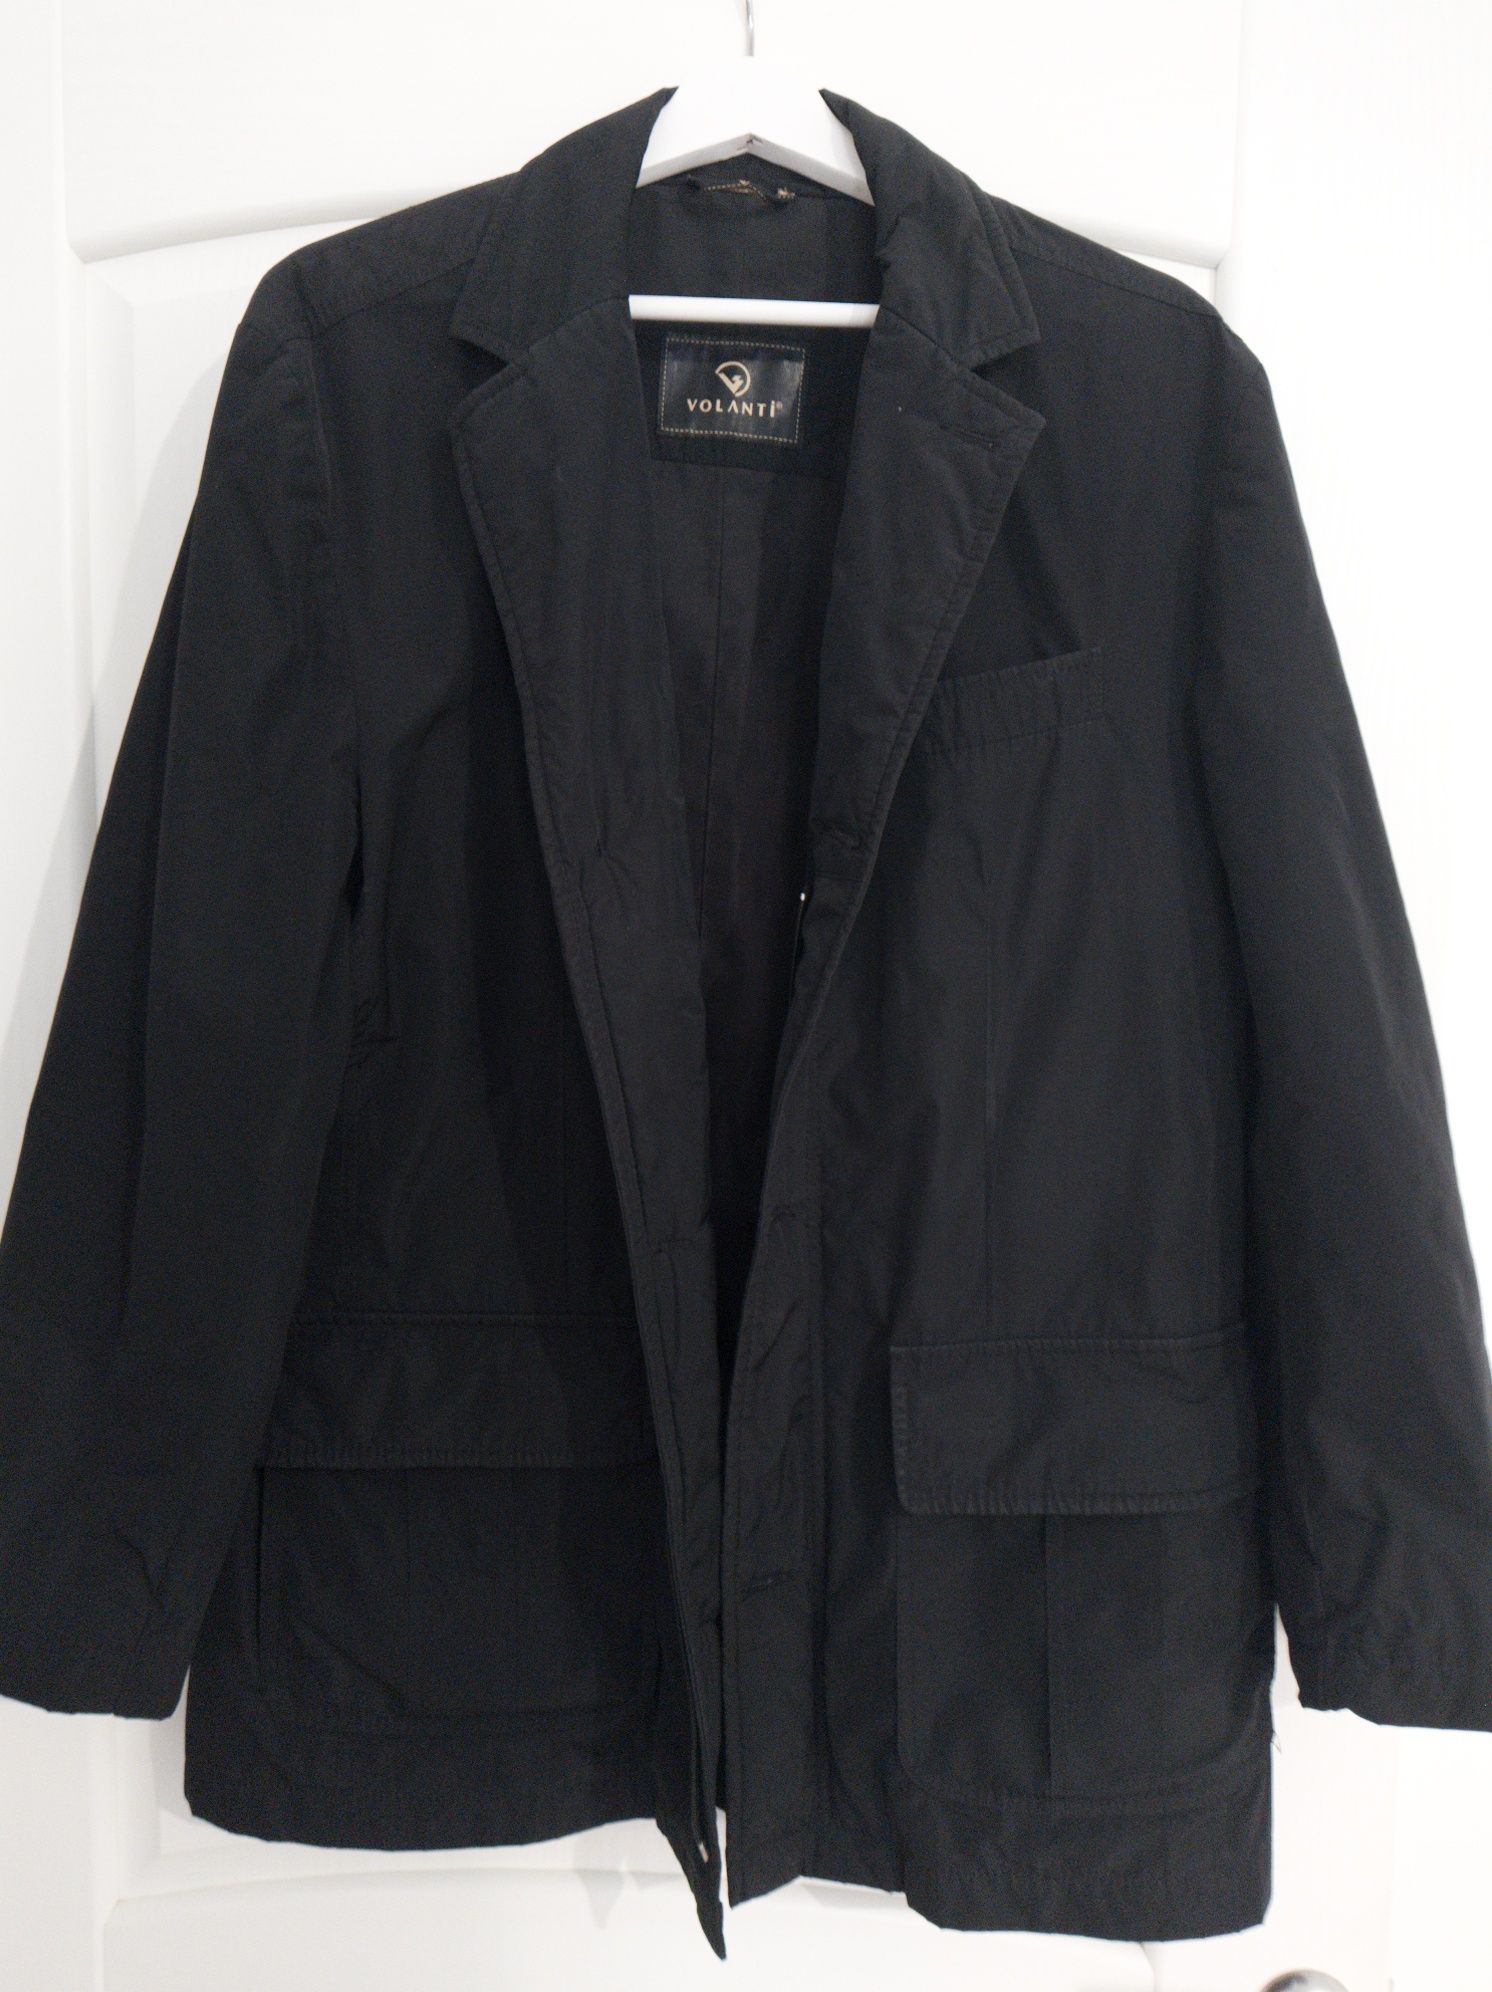 Продам мужской пиджак (куртка)